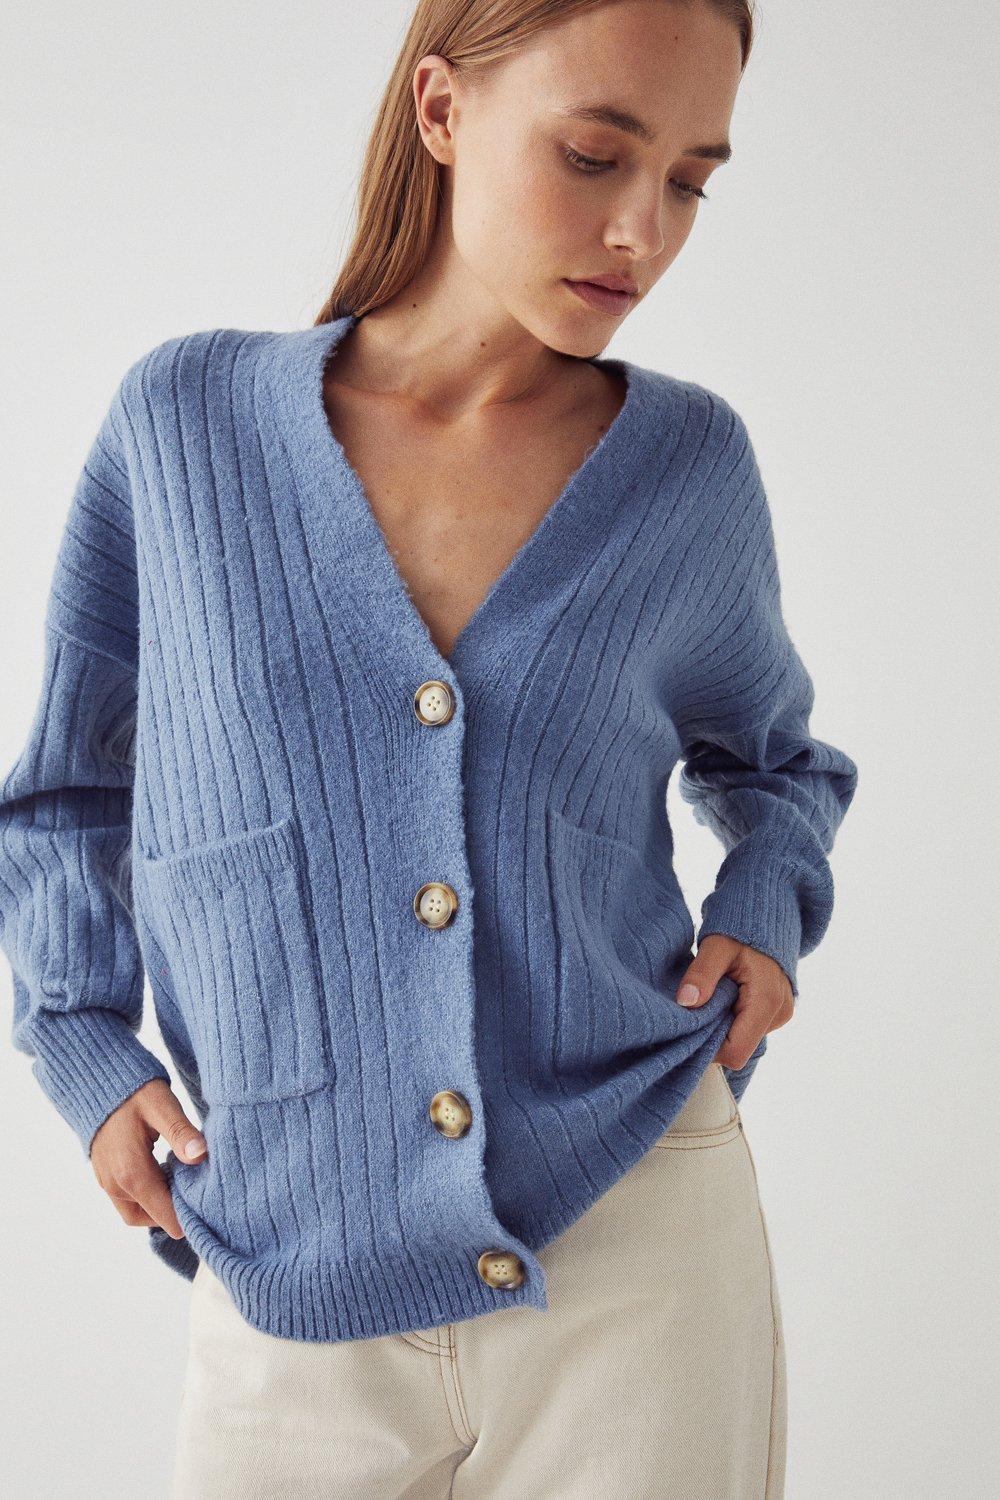 Womens Knitwear | Ladies Knitwear, Jumpers & Cardigans | Warehouse UK